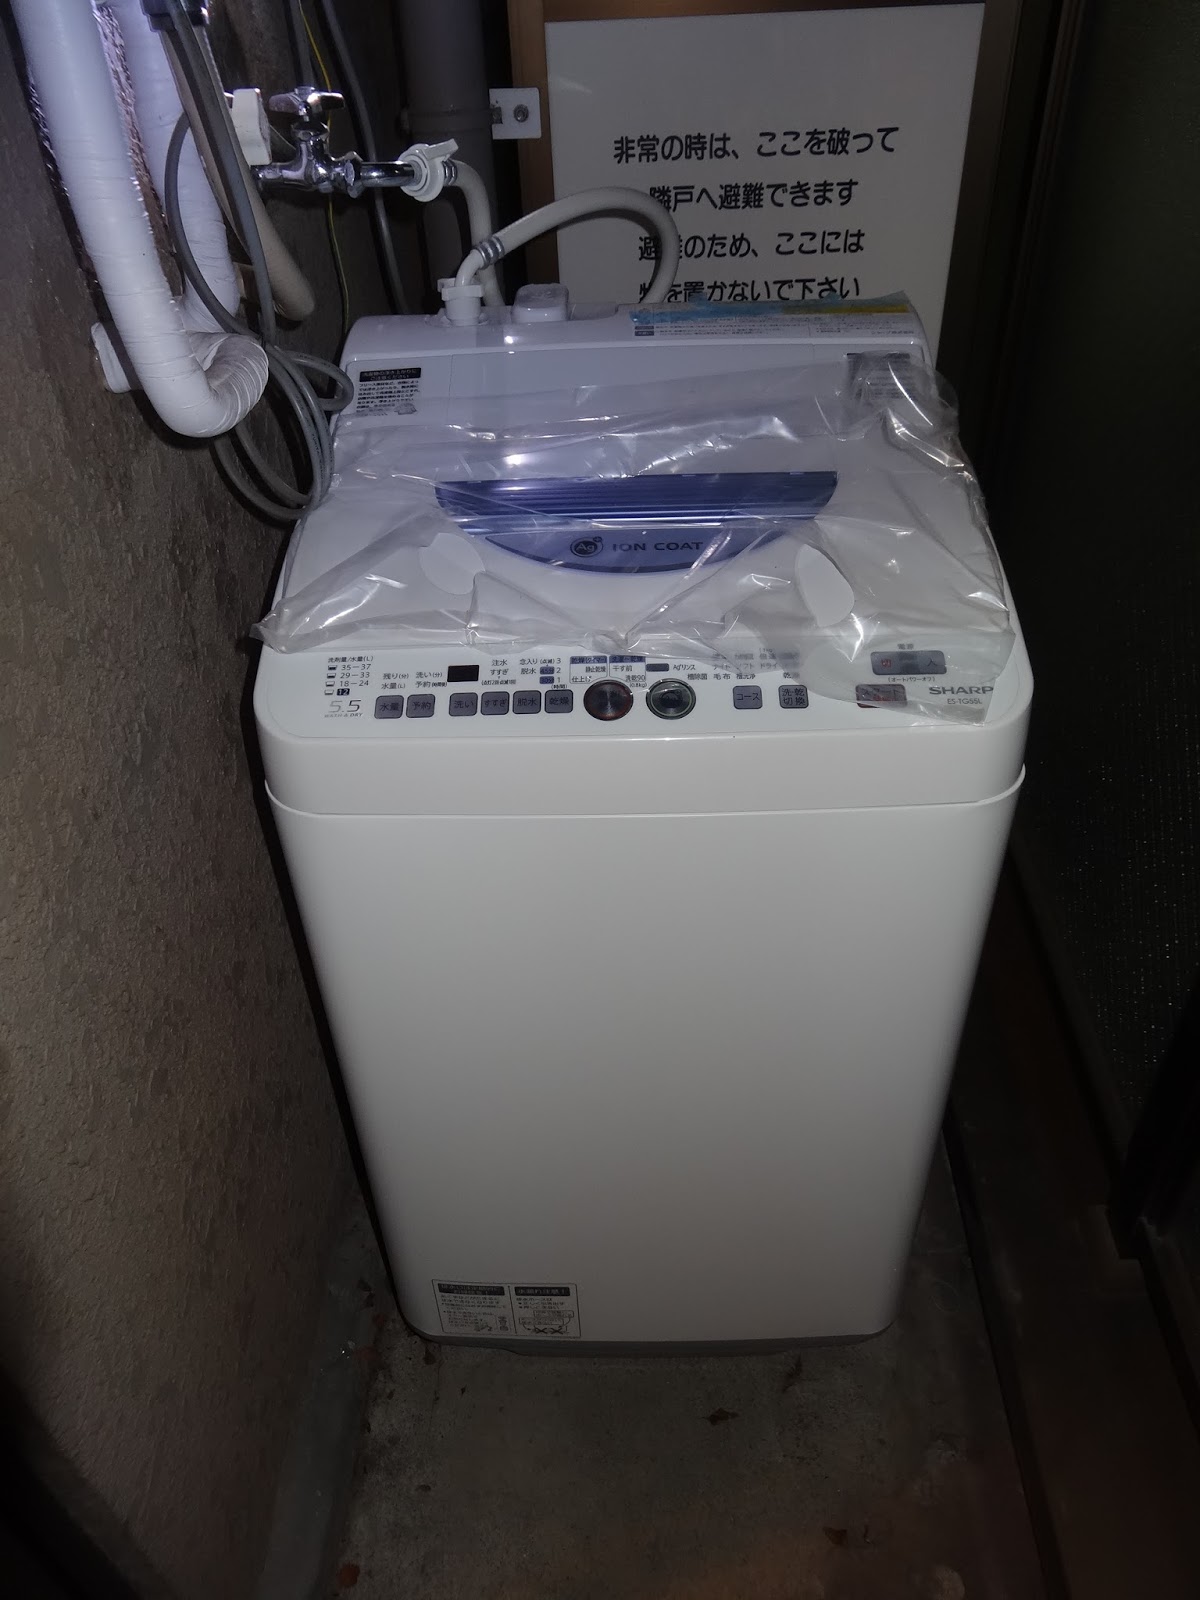 東京便利屋目黒アットマンの日々のご依頼解決奮闘日記: 目黒区で洗濯機設置